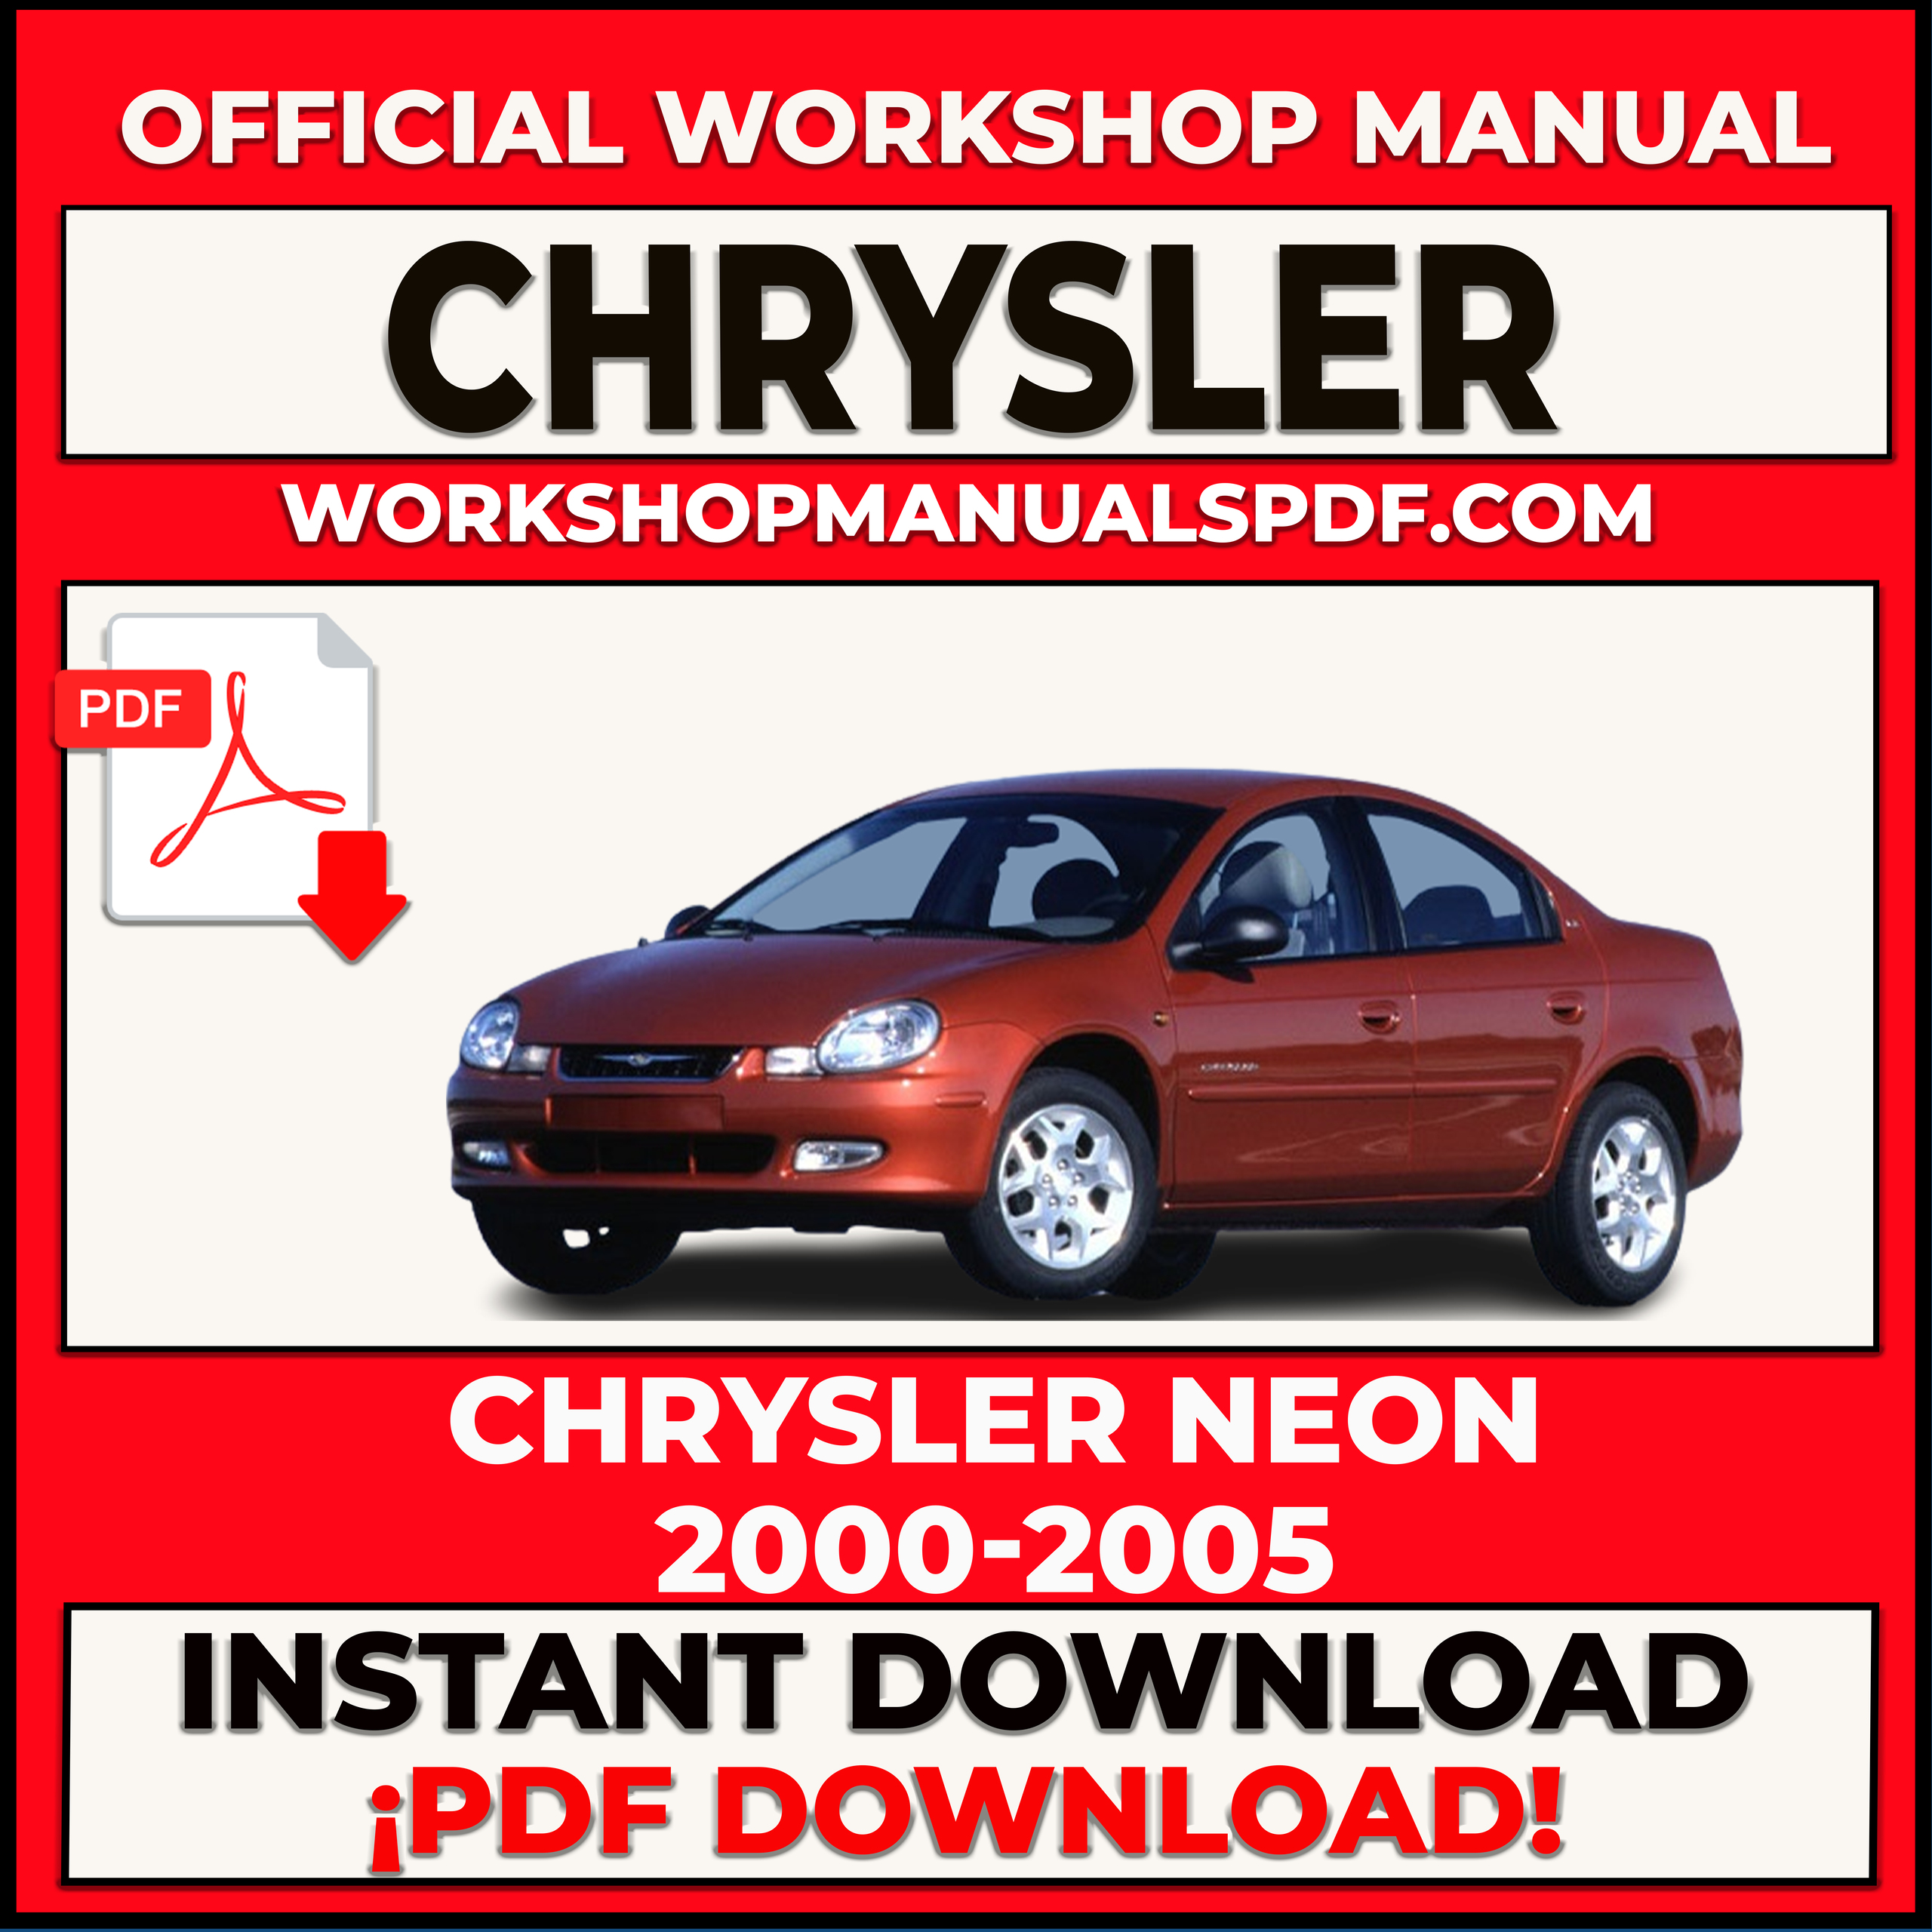 Chrysler Neon 2000-2005 Workshop Repair Manual